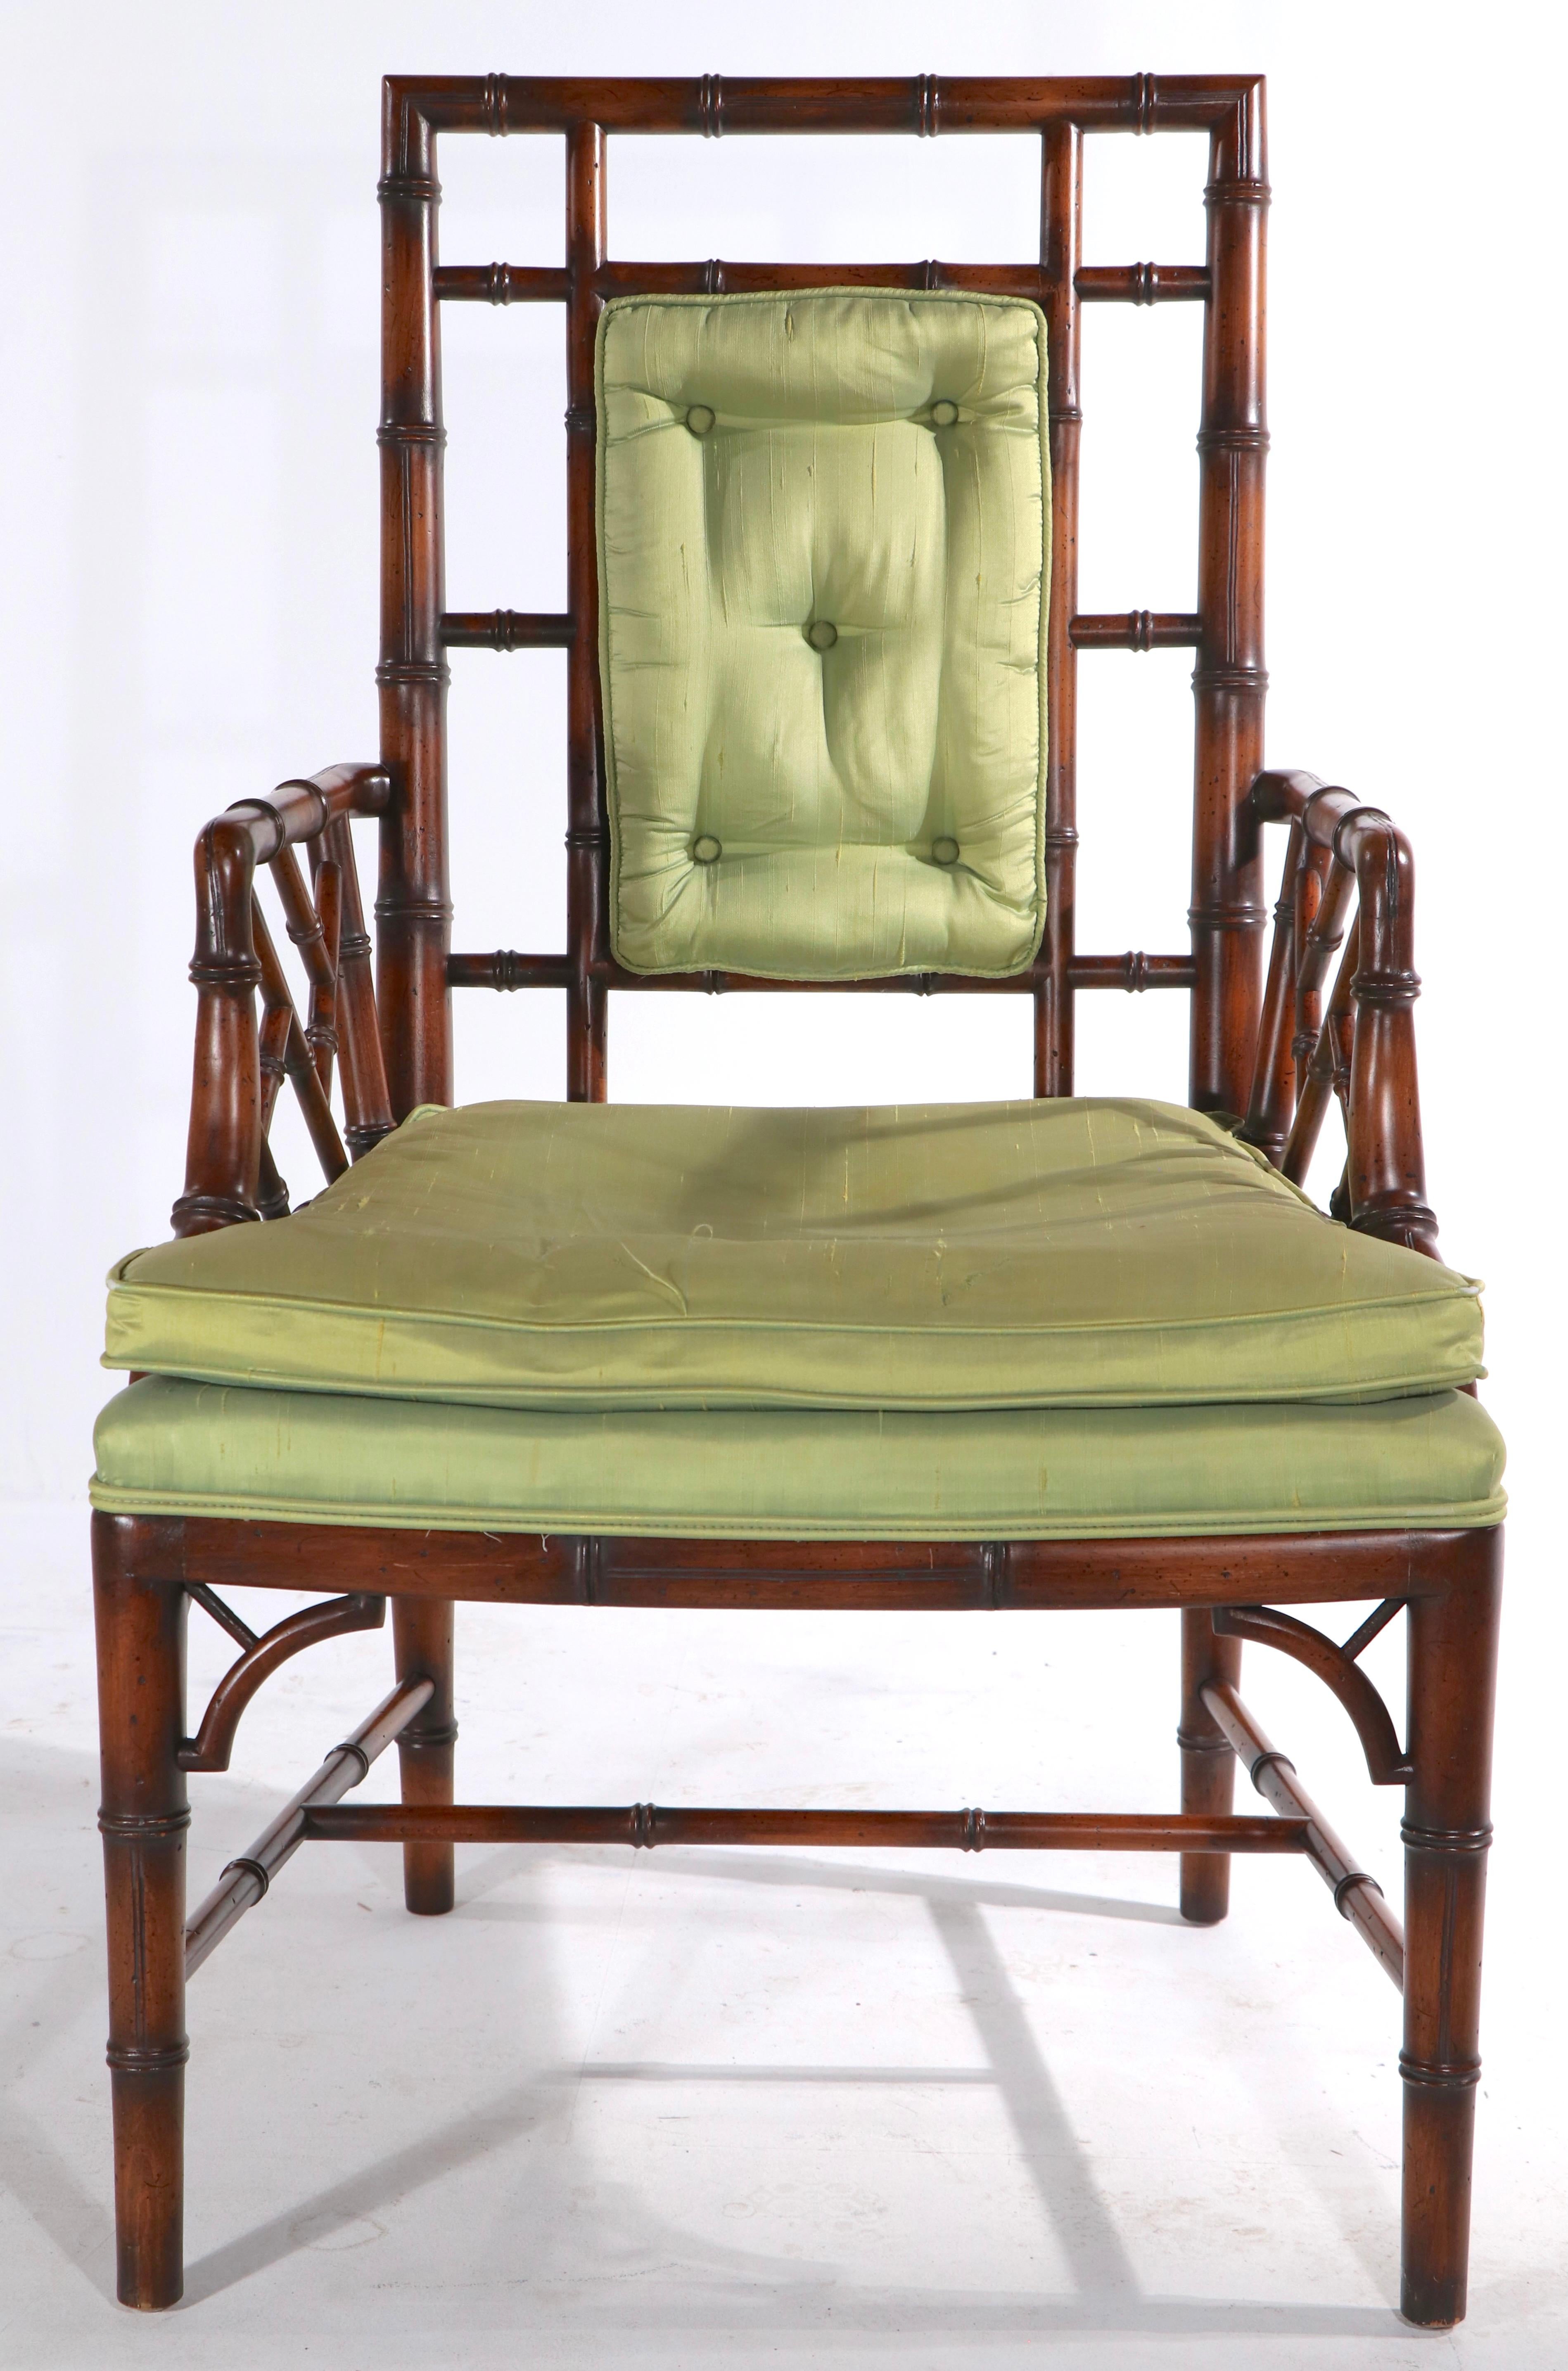 Schicker und raffinierter Sessel aus Bambusimitat, hergestellt von dem bekannten Möbelhersteller The Schoonbeck Company, später bekannt als Schonbeck Henredon. Der Stuhl hat einen Massivholzrahmen, mit gepolsterter Sitzfläche und Rückenlehne, die